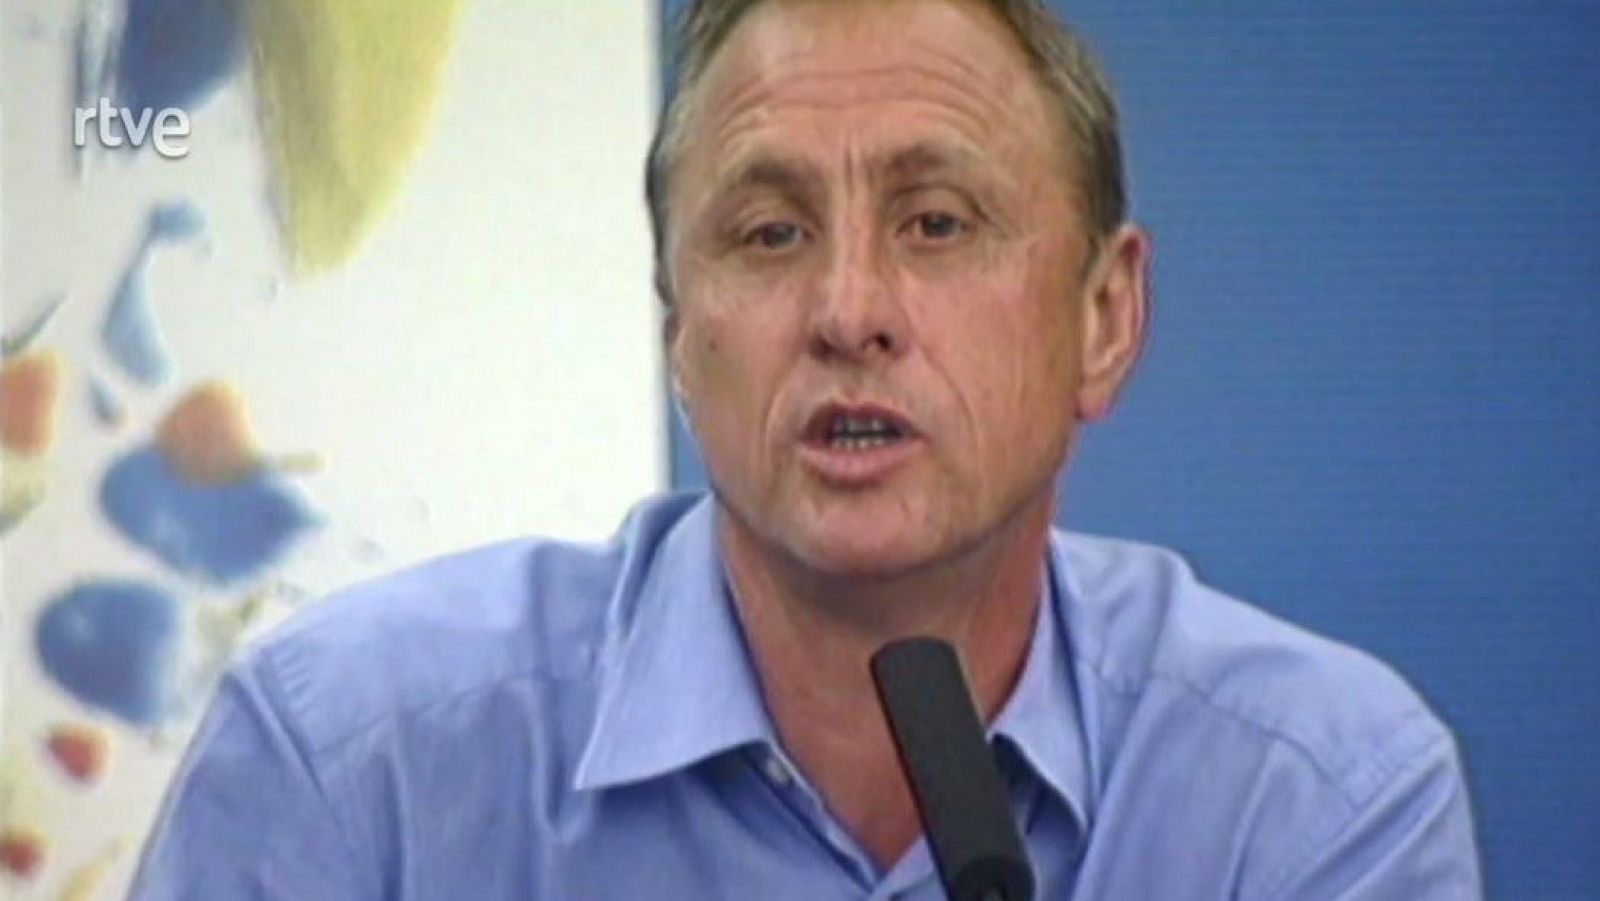 Conferència de Johan Cruyff al RCT Barcelona - Més que un club